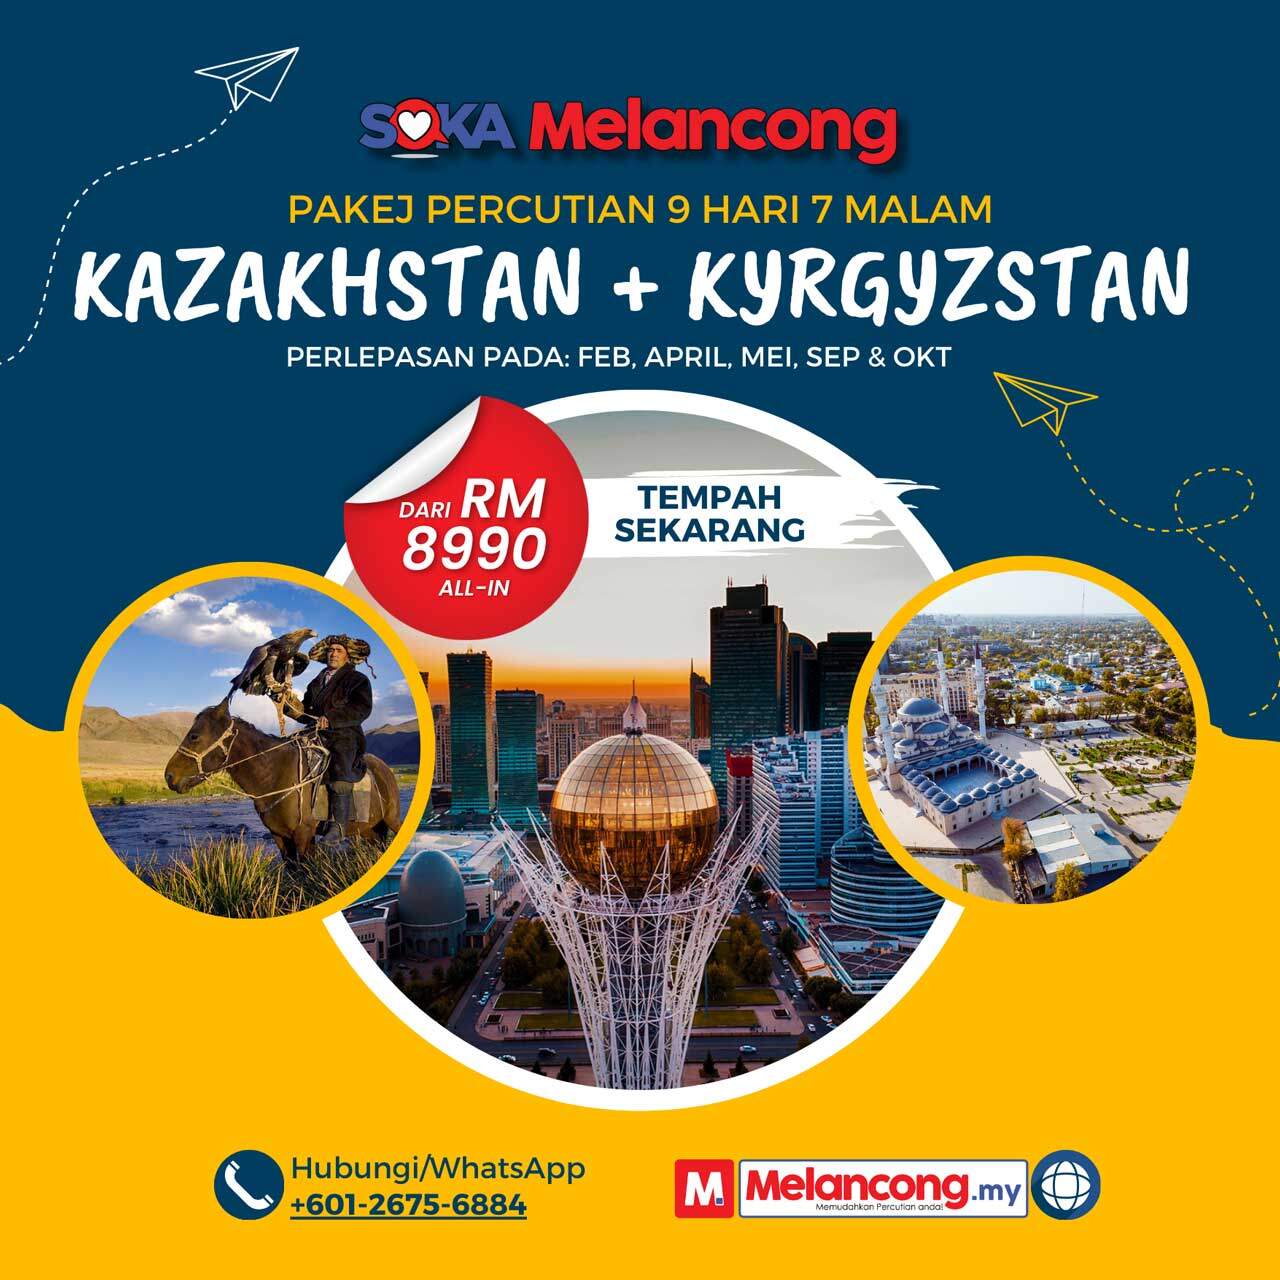 Pakej-Kazakhstan-Kyrgyzstan-promo